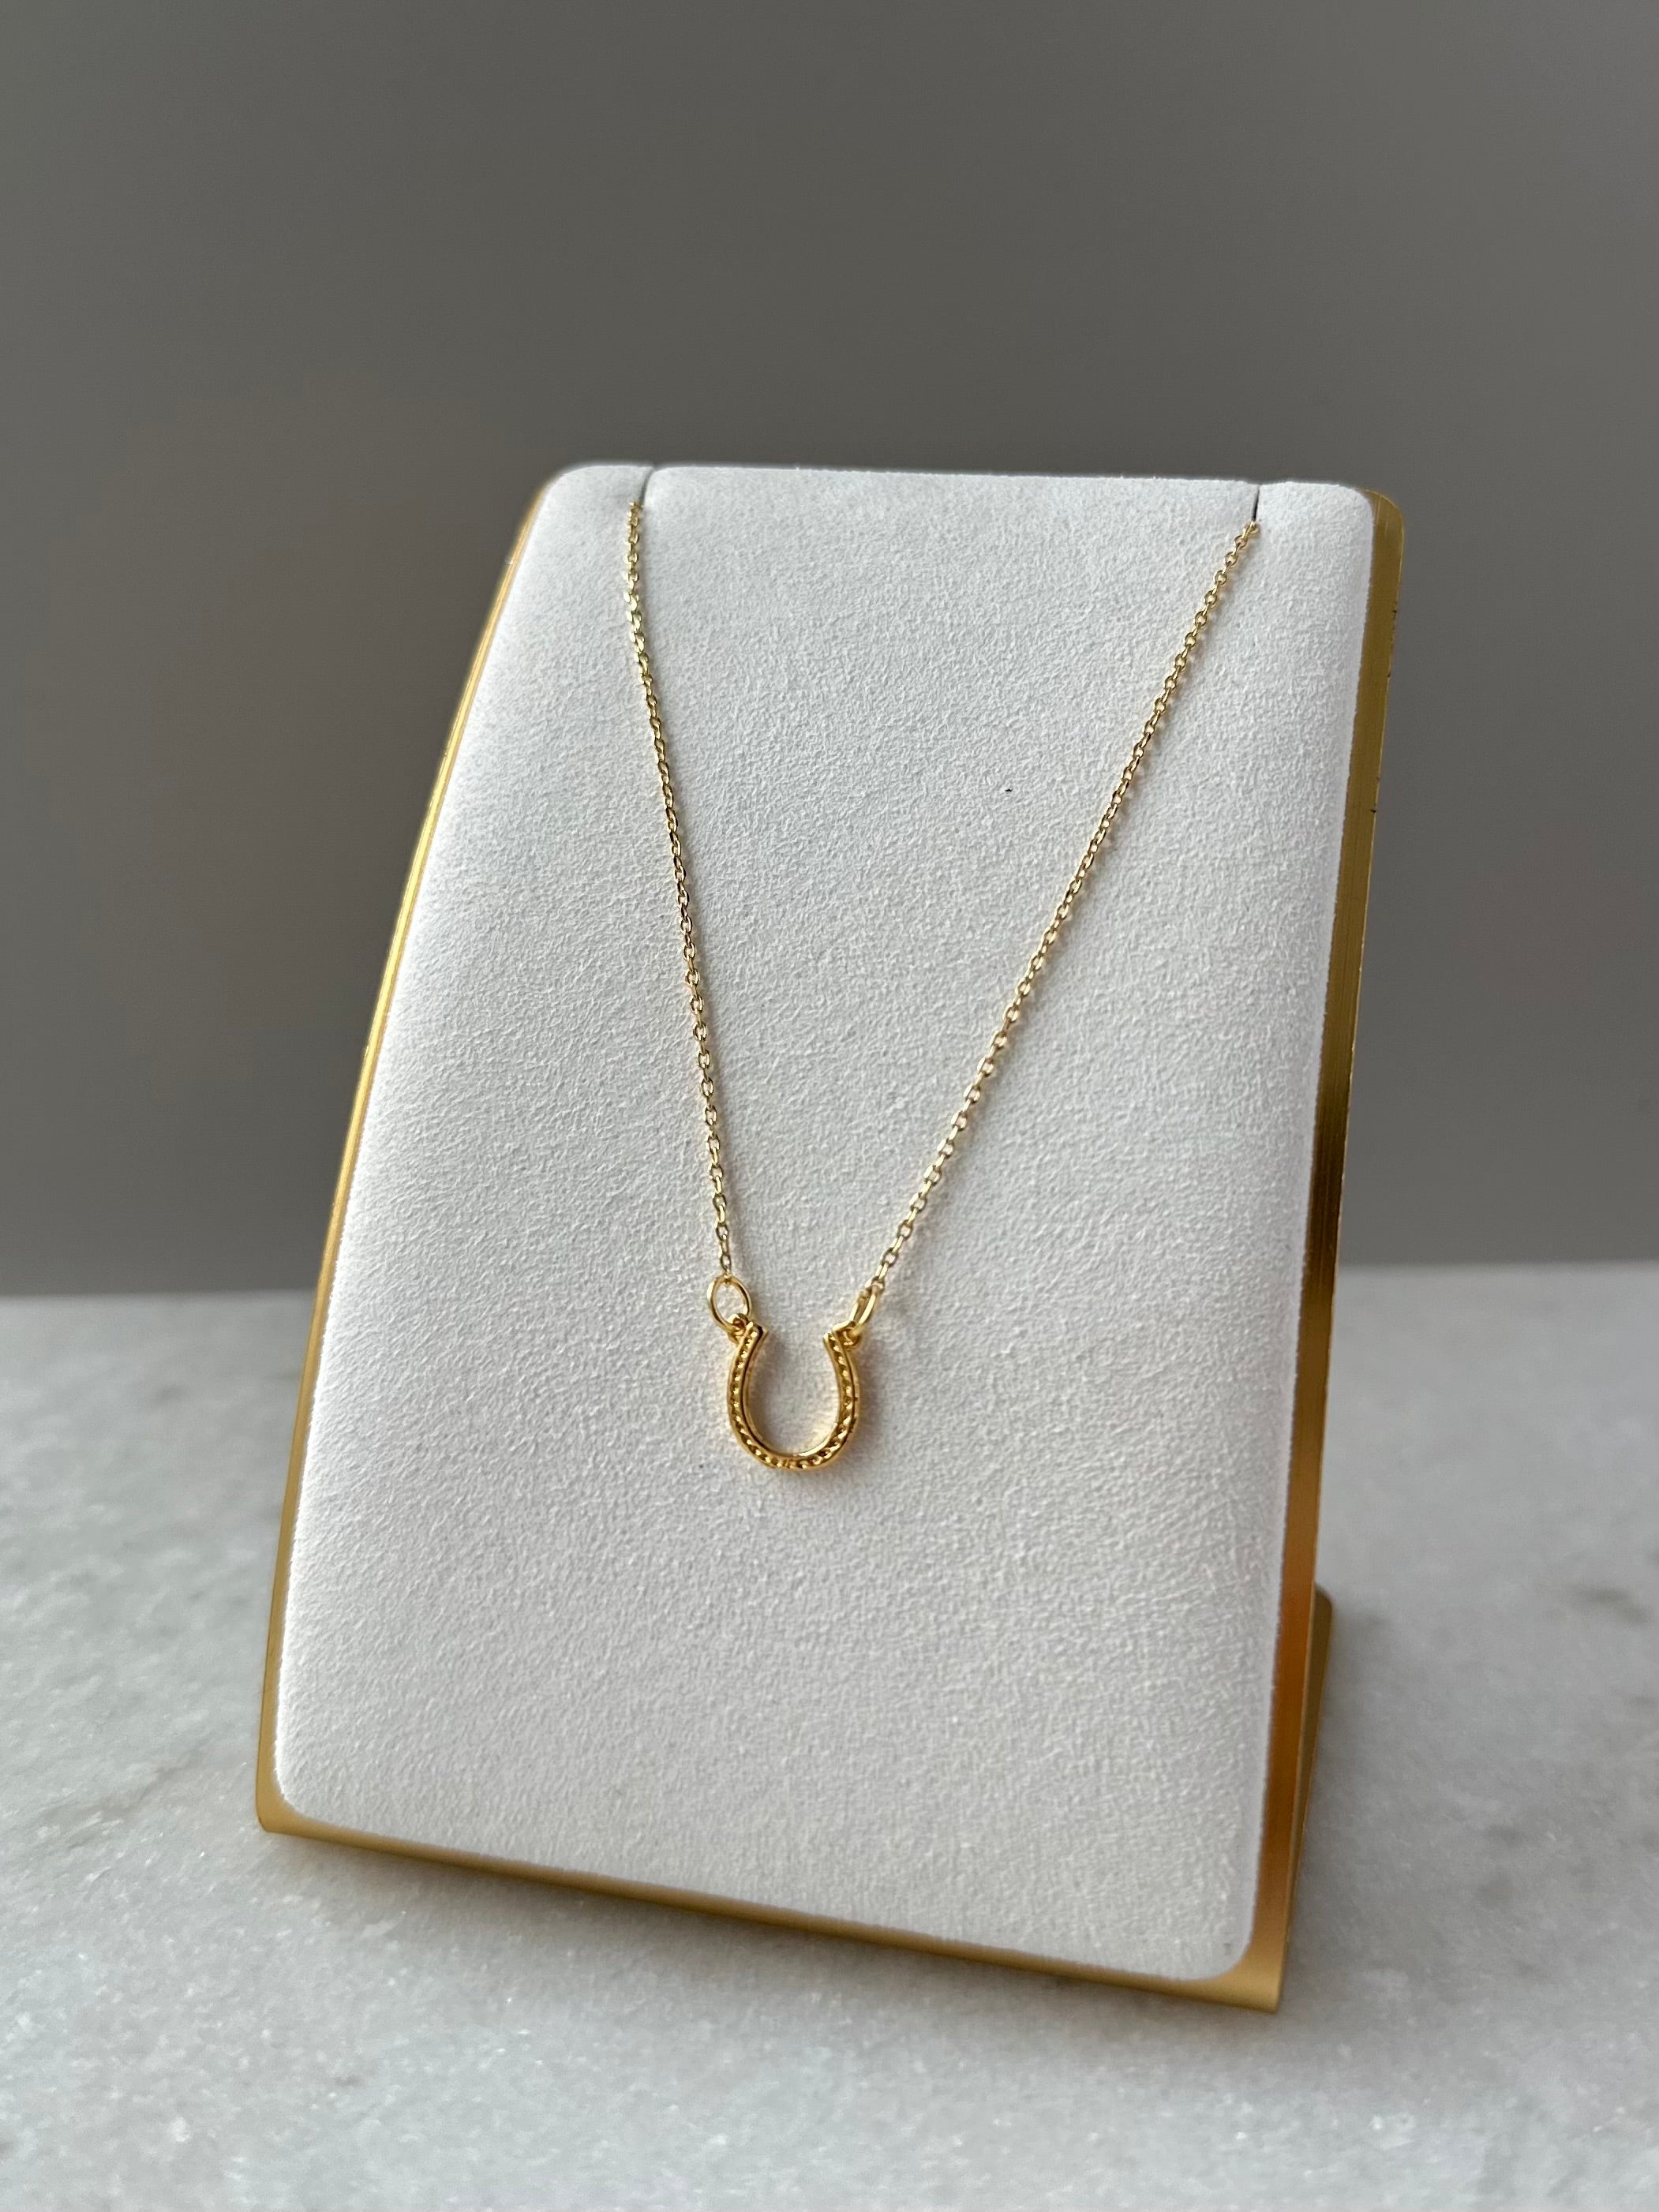 Horseshoe Necklace- Gold